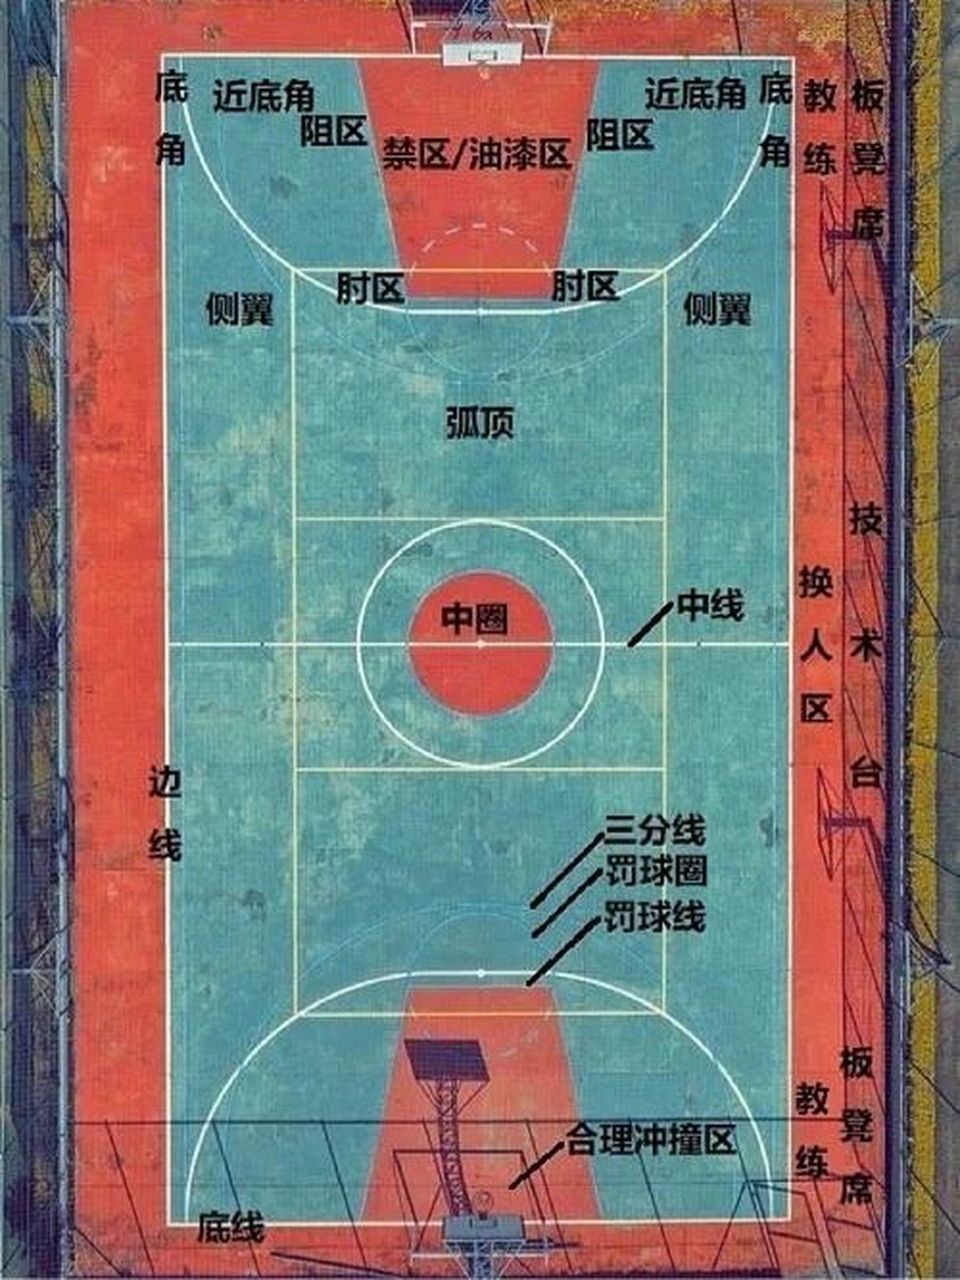 篮球站位图解5对5图片